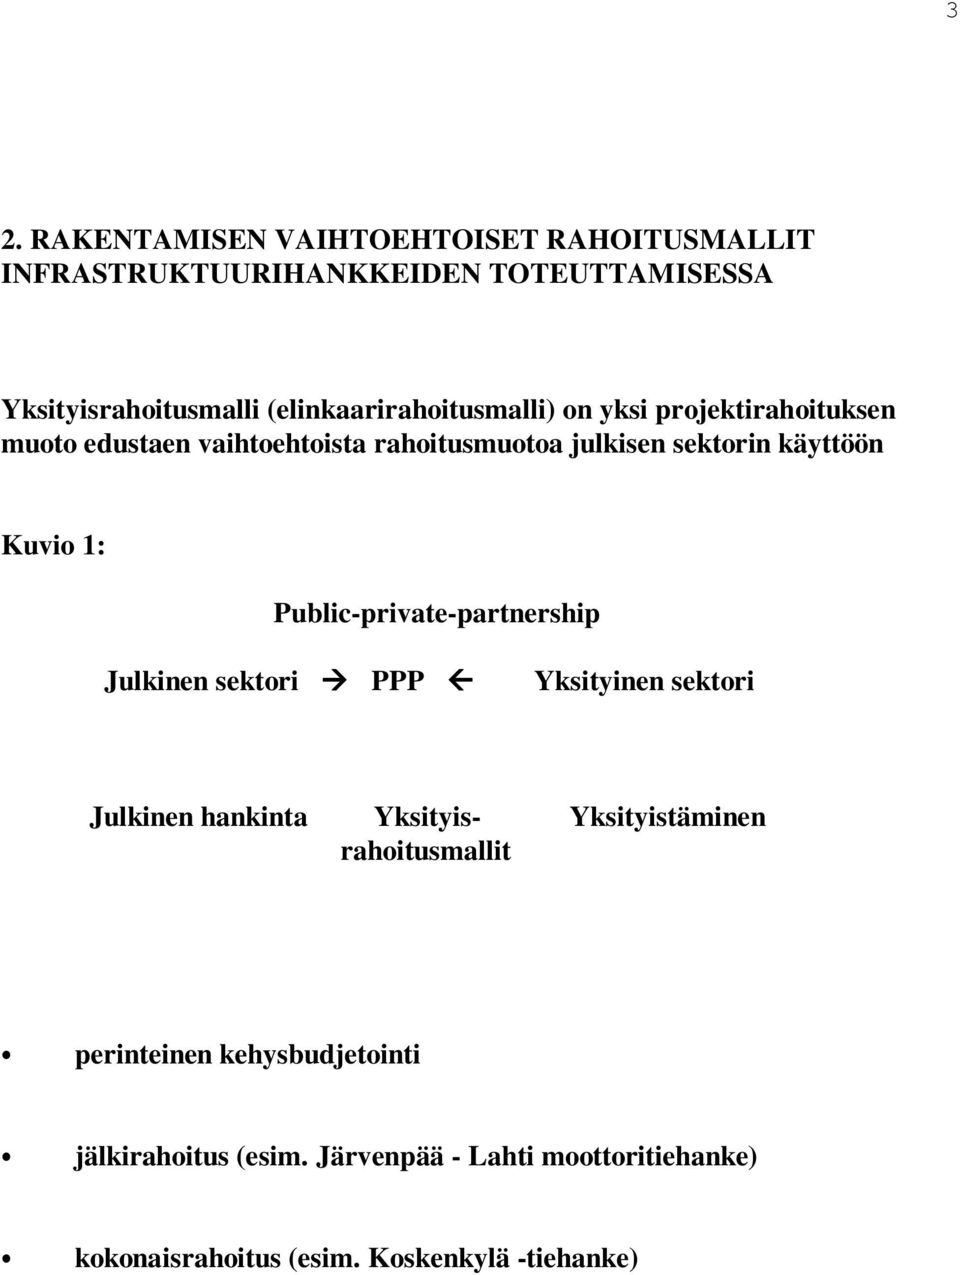 Kuvio 1: Public-private-partnership Julkinen sektori PPP Yksityinen sektori Julkinen hankinta Yksityis- Yksityistäminen